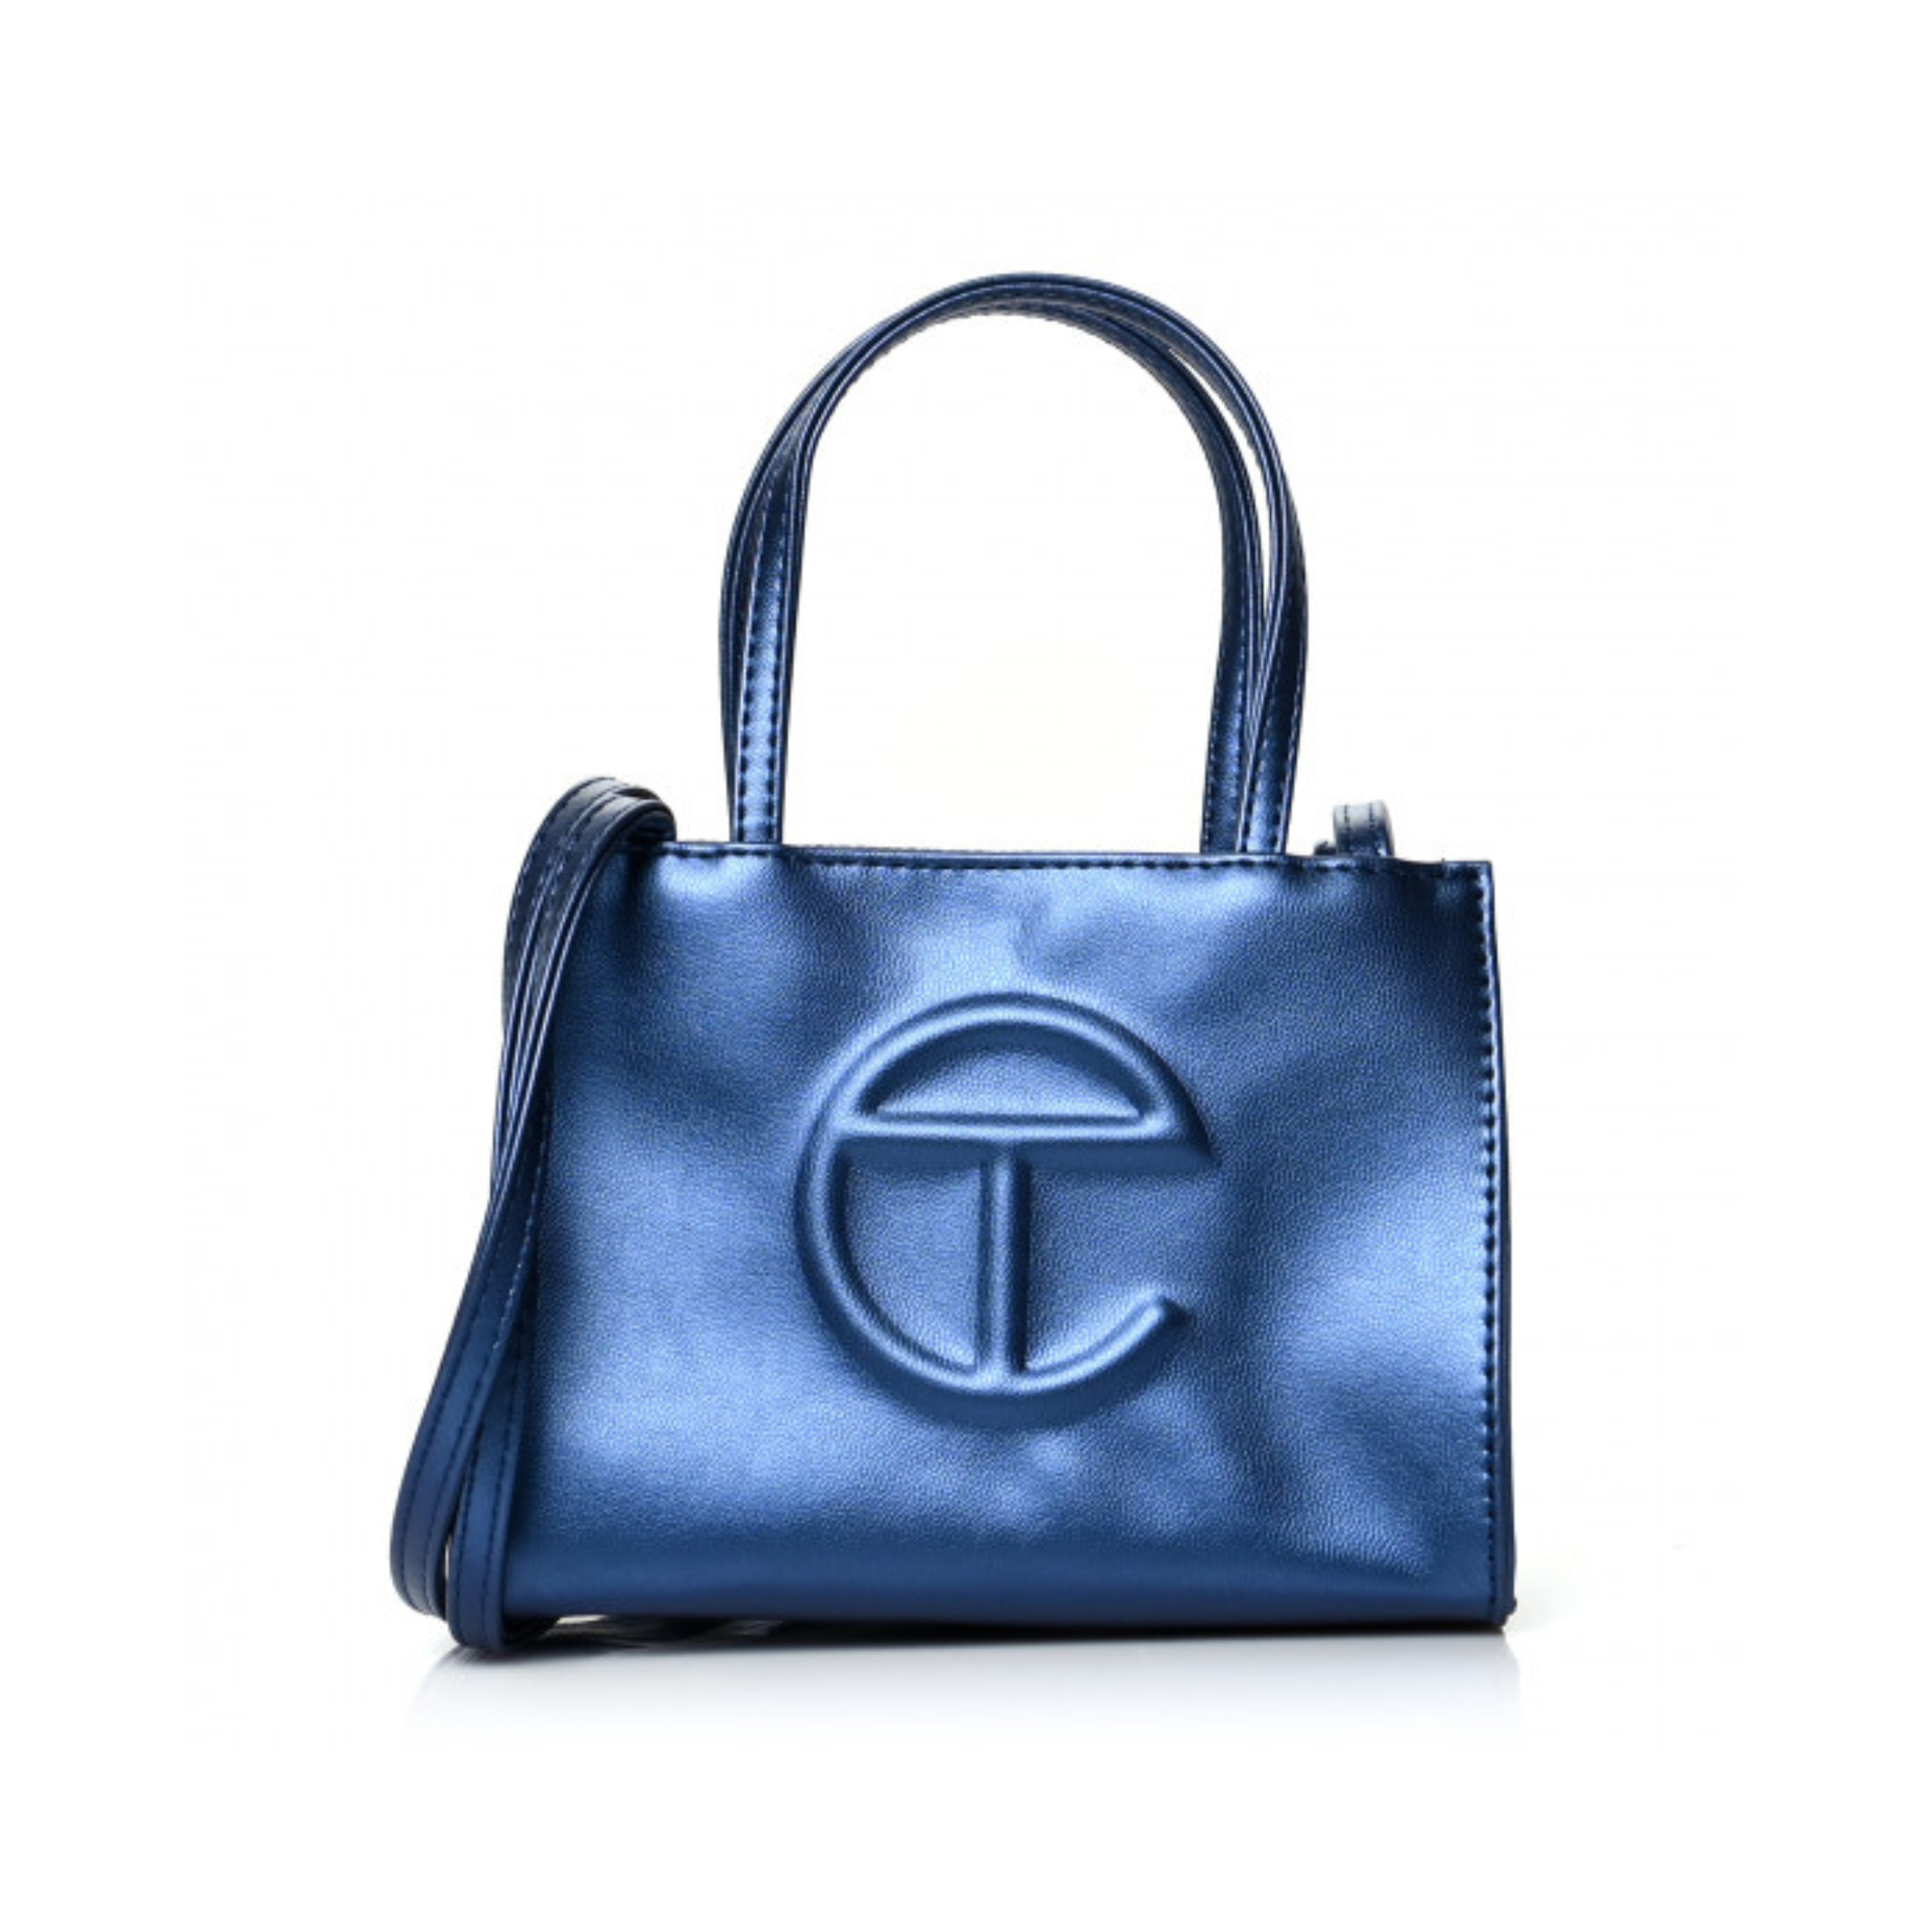 10 Best Black-Owned Handbag Brands to Shop